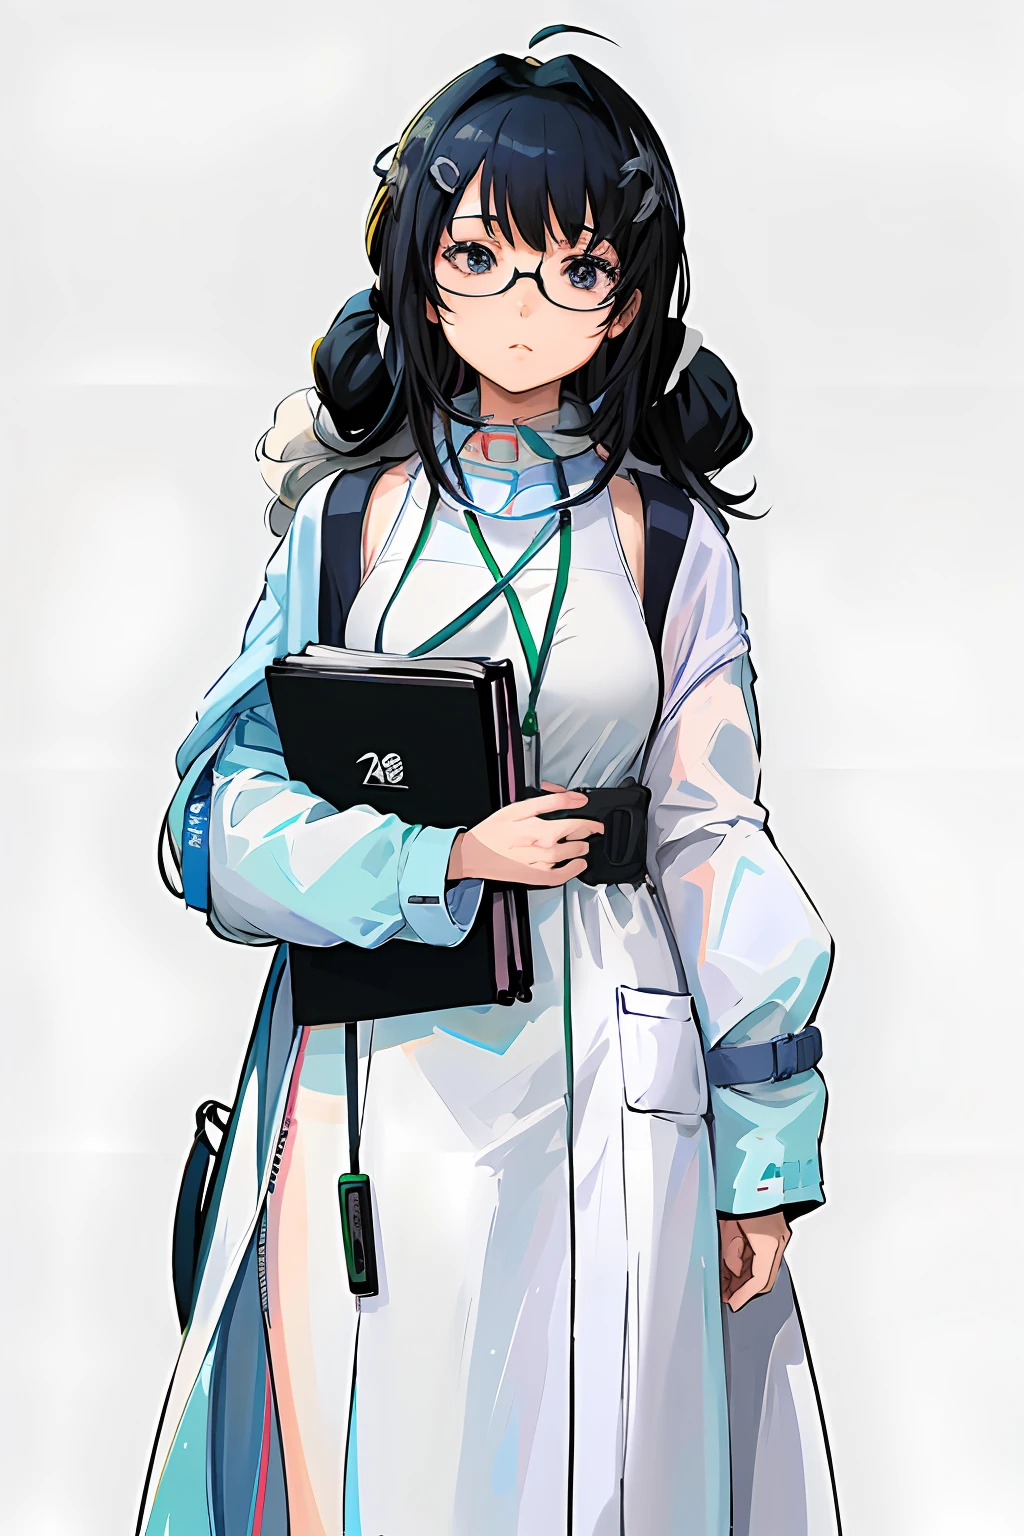 Anime-Figuren mit Brille und einem Buch in der Hand, Anime-Moe-Kunststil, trägt Laborkittel und Brille,  Tragen Sie einen Laborkittel und einen blauen Rollkragenpullover，detaillierte Anime-Charakterkunst, Anime Ganzkörperillustration, offizielle Charakterkunst, Hochwertiger Anime-Kunststil, Professor Kleidung, Anime-Charakterkunst, Anime-Bild eines süßen Mädchens, An seinem rechten Handgelenk trägt er eine blaue Uhr